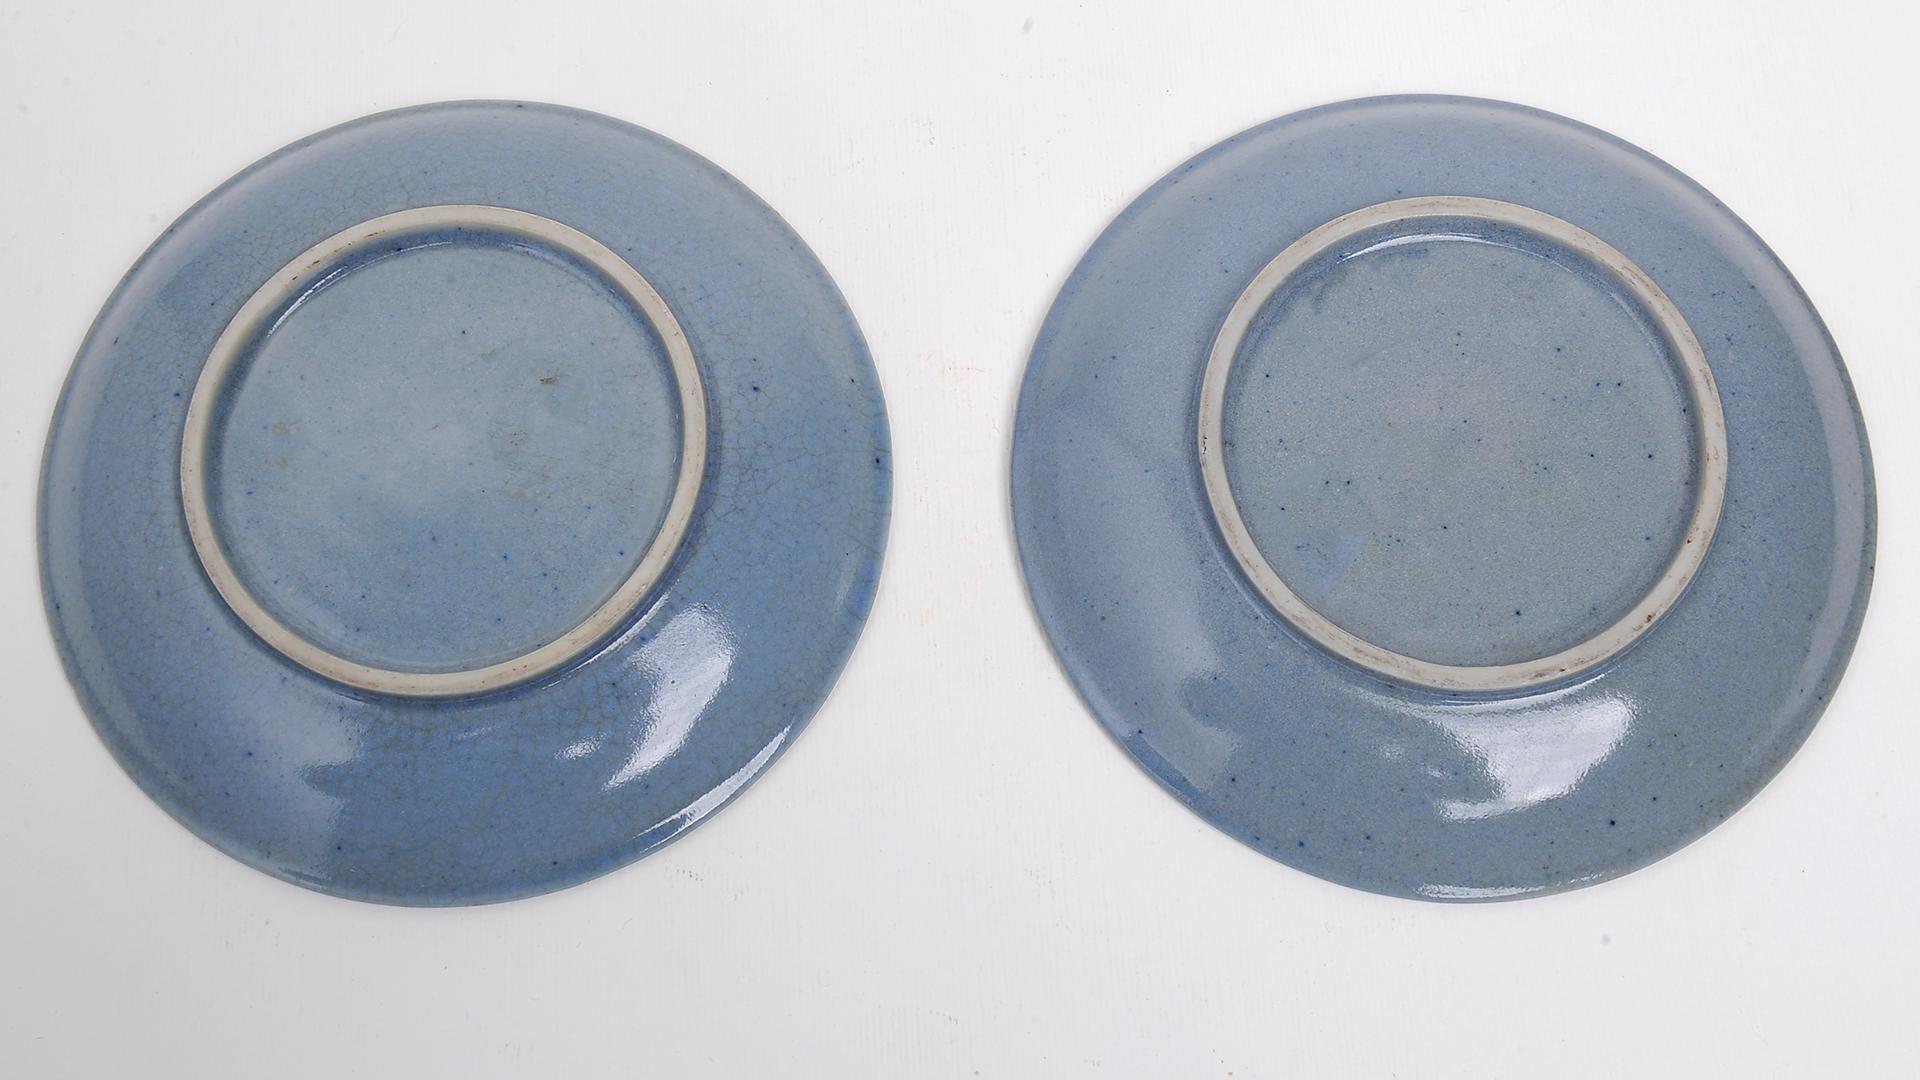 Paar antike blaue kleine chinesische Teller aus meiner Privatsammlung: vor ca. 35 Jahren gesammelt und nie der Öffentlichkeit zugänglich gemacht.
Schauen Sie sich andere Artikel meiner gesamten Sammlung an. Jetzt möchte ich meine Aktivitäten